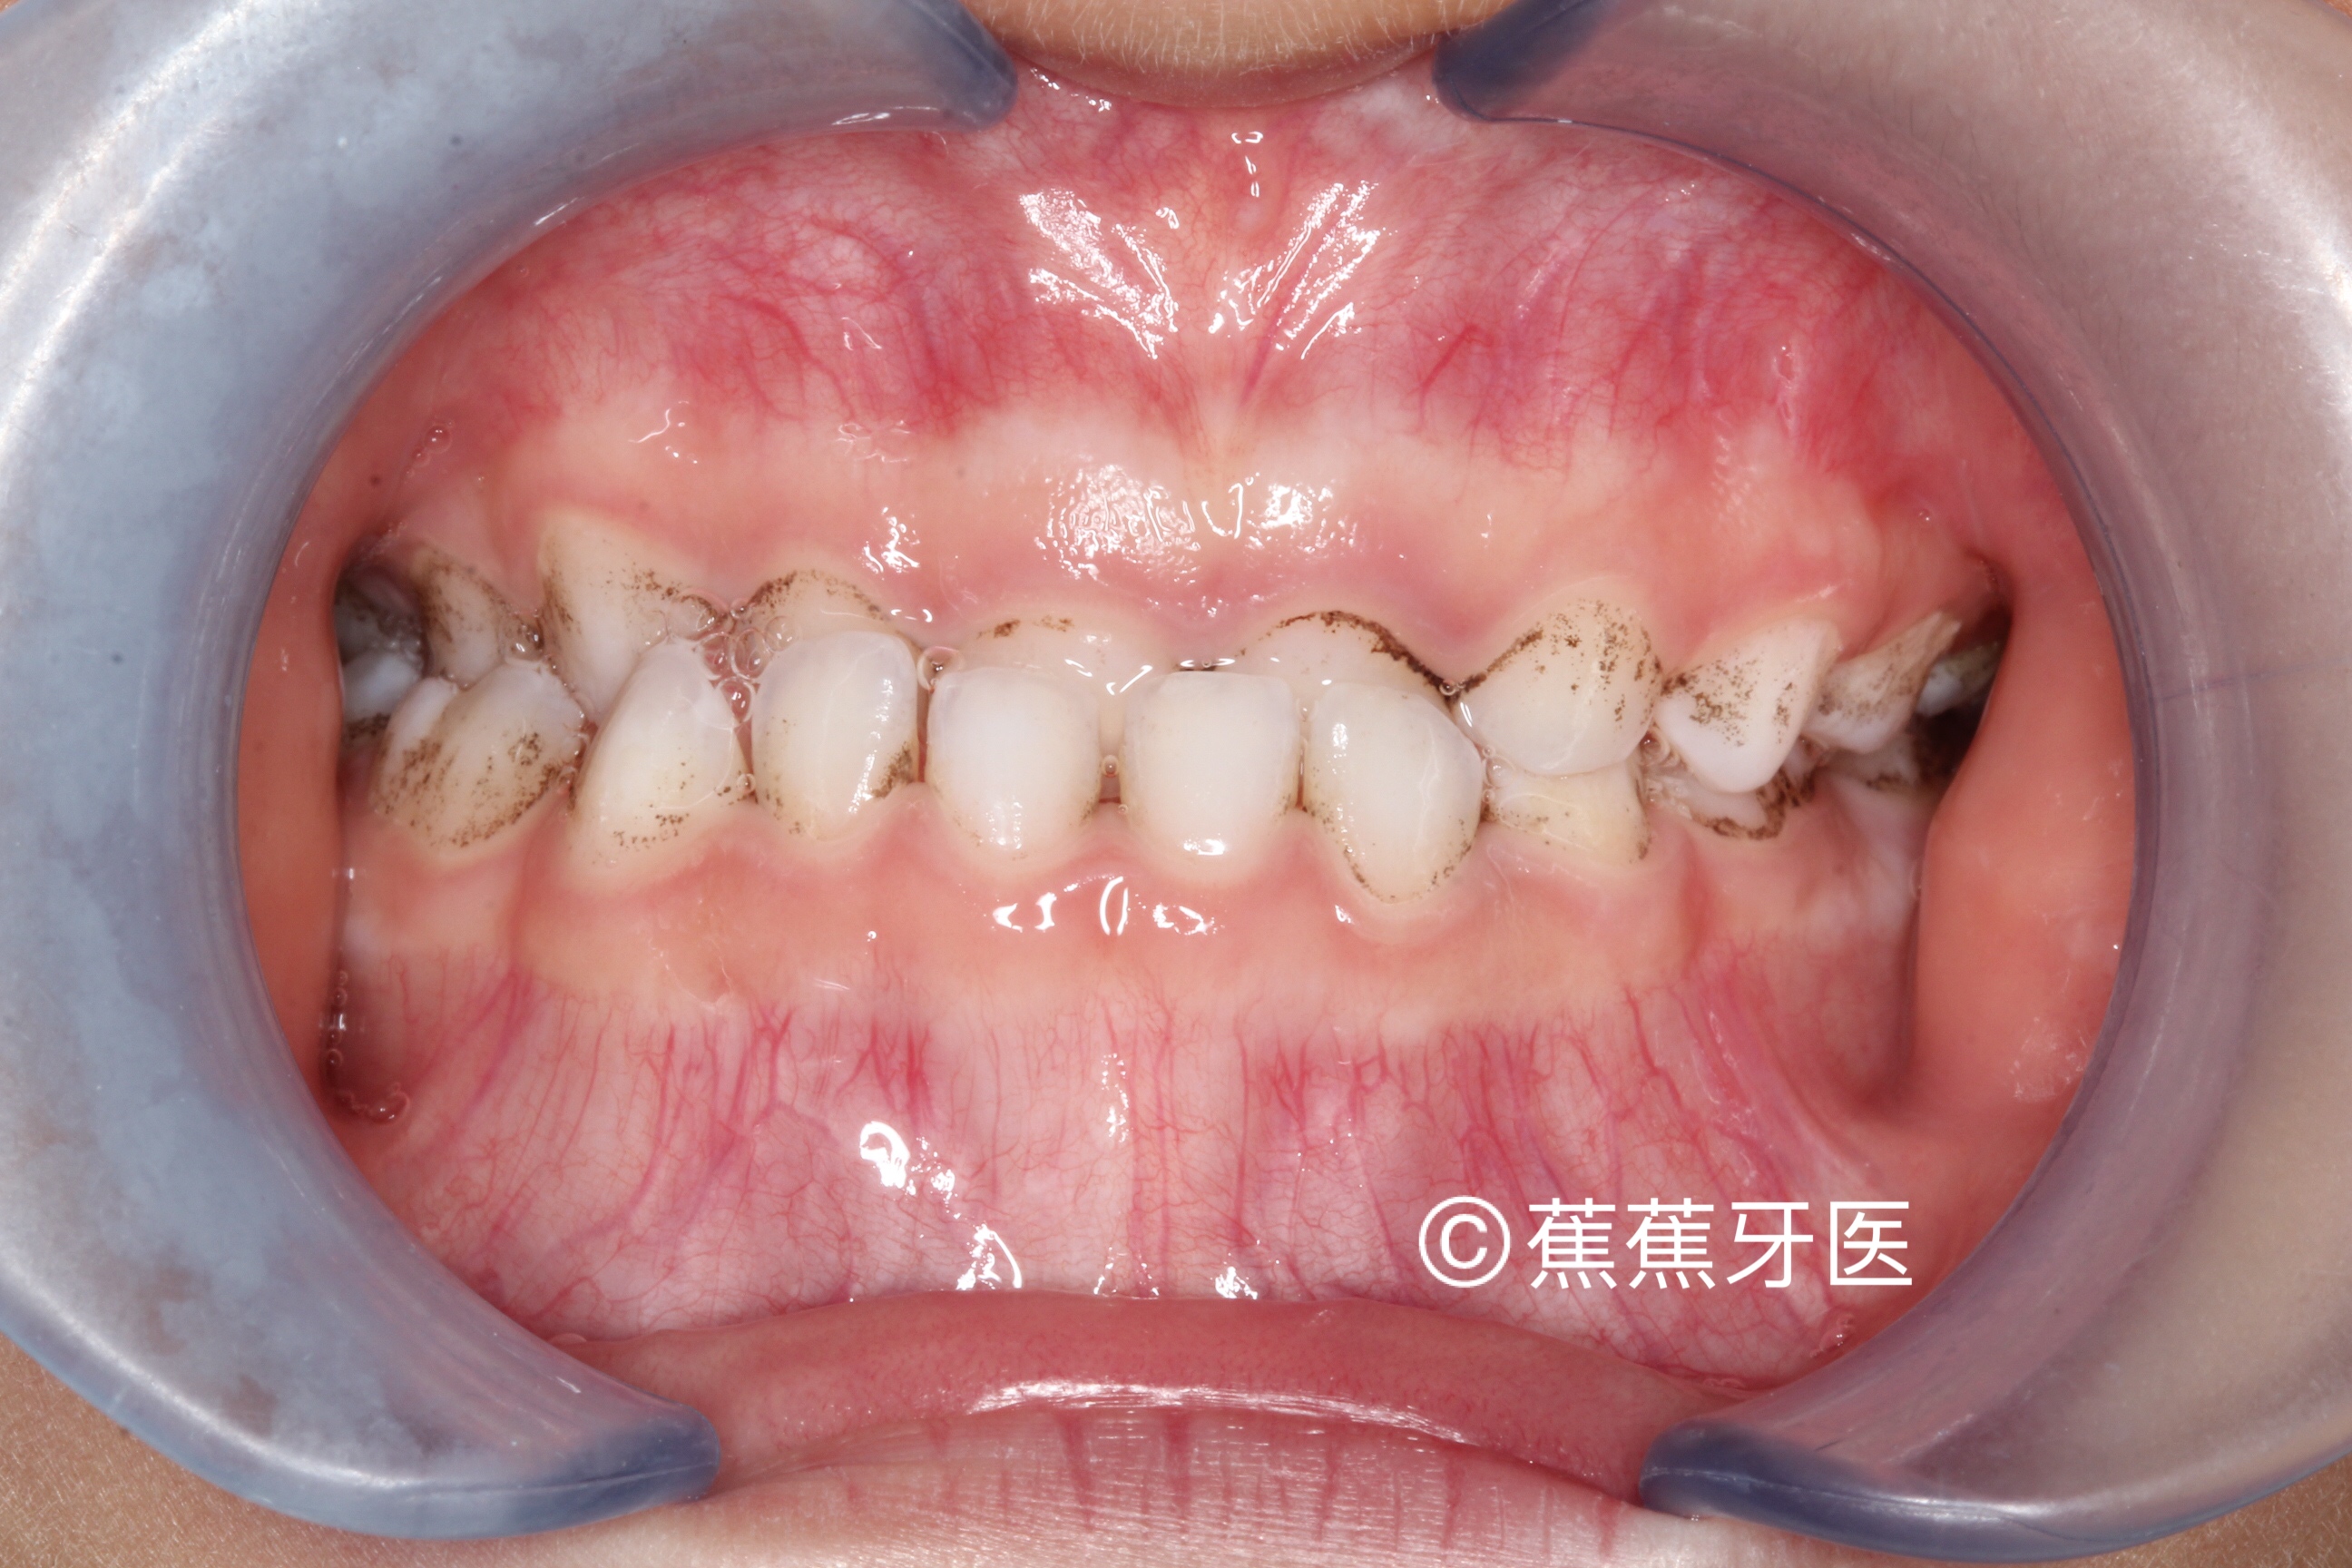 就会开始有地包天的现象,地包天实际指的是前牙反颌,正常牙齿覆合